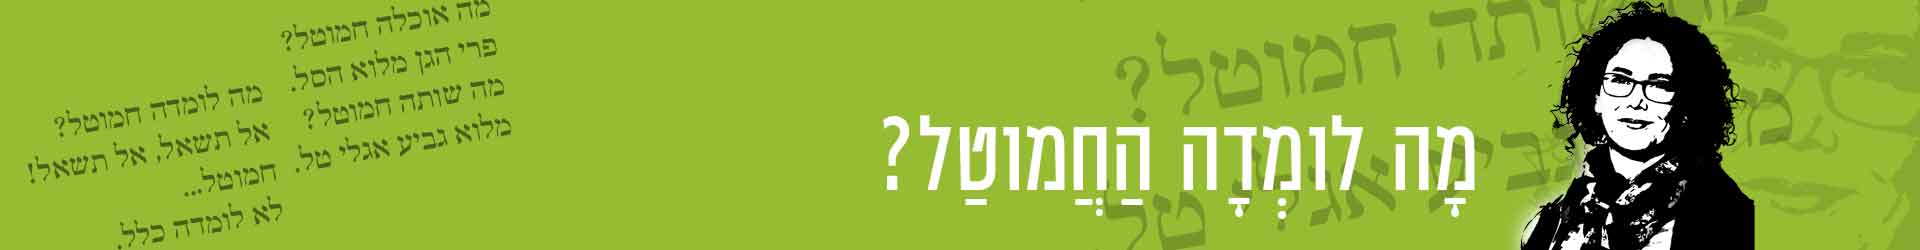 קורס בניה ירוקה מ.א.מגילות ואיגוד ערים יהודה – פגישה2 – מבוא: איל ביגר